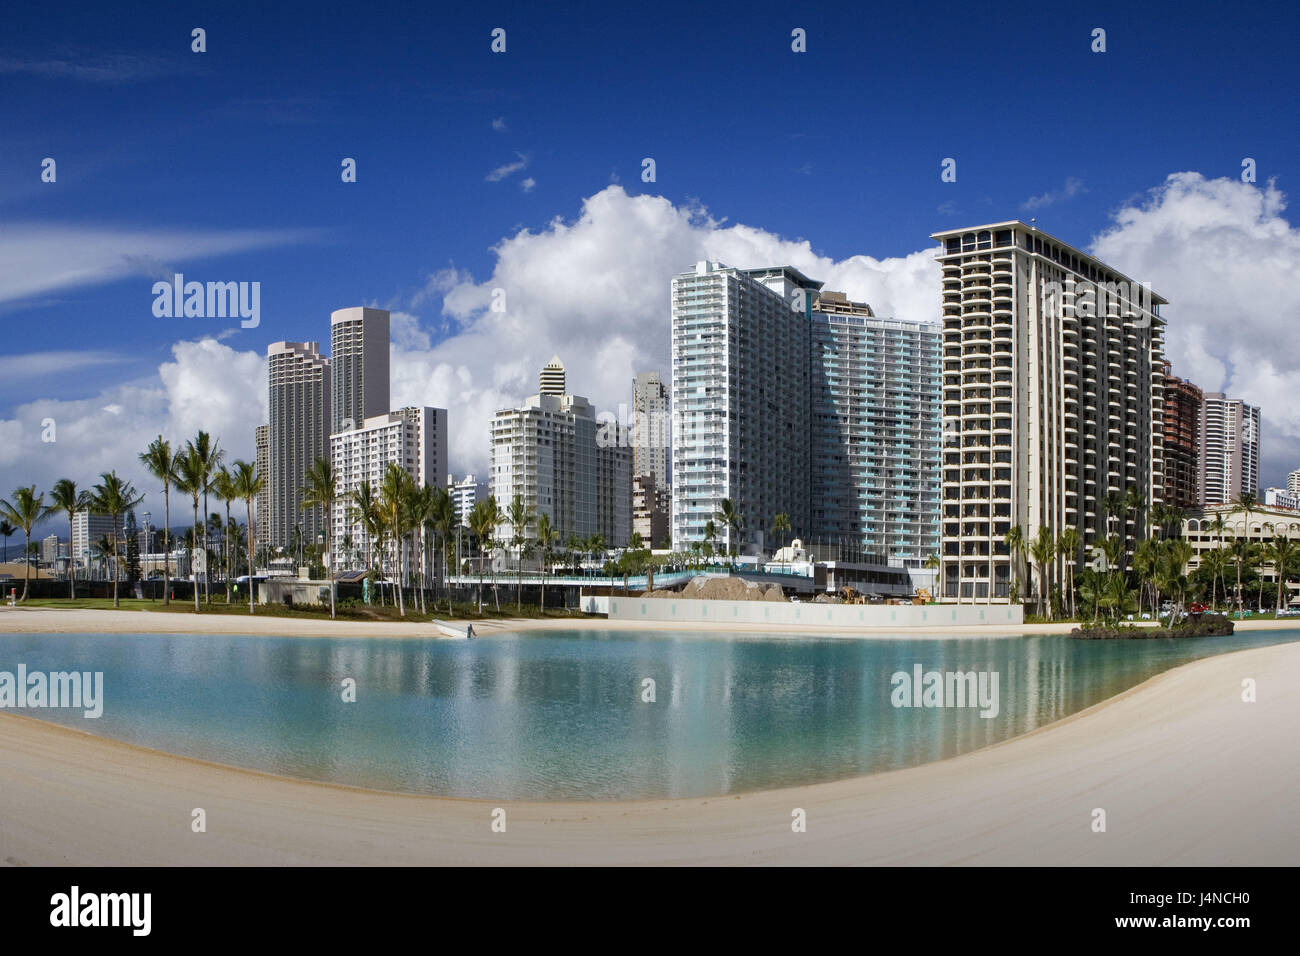 Gli Stati Uniti, Hawaii, Oahu Islanda, Honolulu, Hilton laguna, le isole hawaiane, destinazione, turismo, edificio alto sorge, architettura, palme, nuvole al di fuori, deserte, Foto Stock